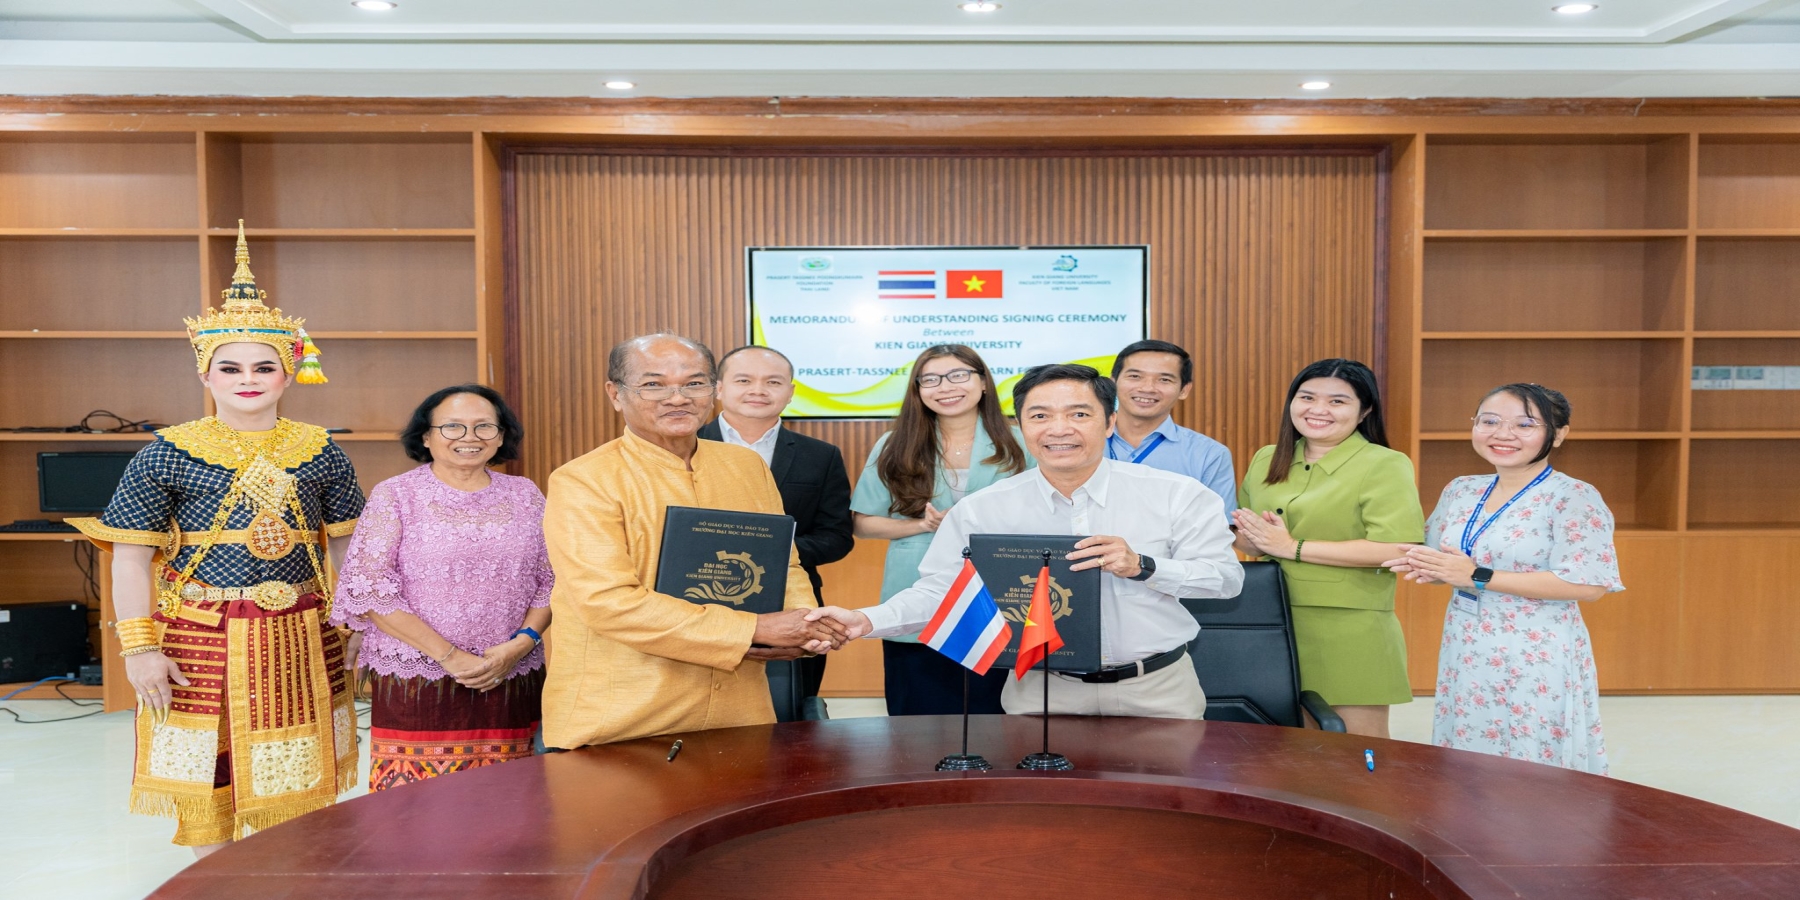 Trường Đại học Kiên Giang ký kết hợp tác với Tổ chức Prasert- Tassnee Poongkumarn Foundation, Thái Lan về giáo dục và khoa học 